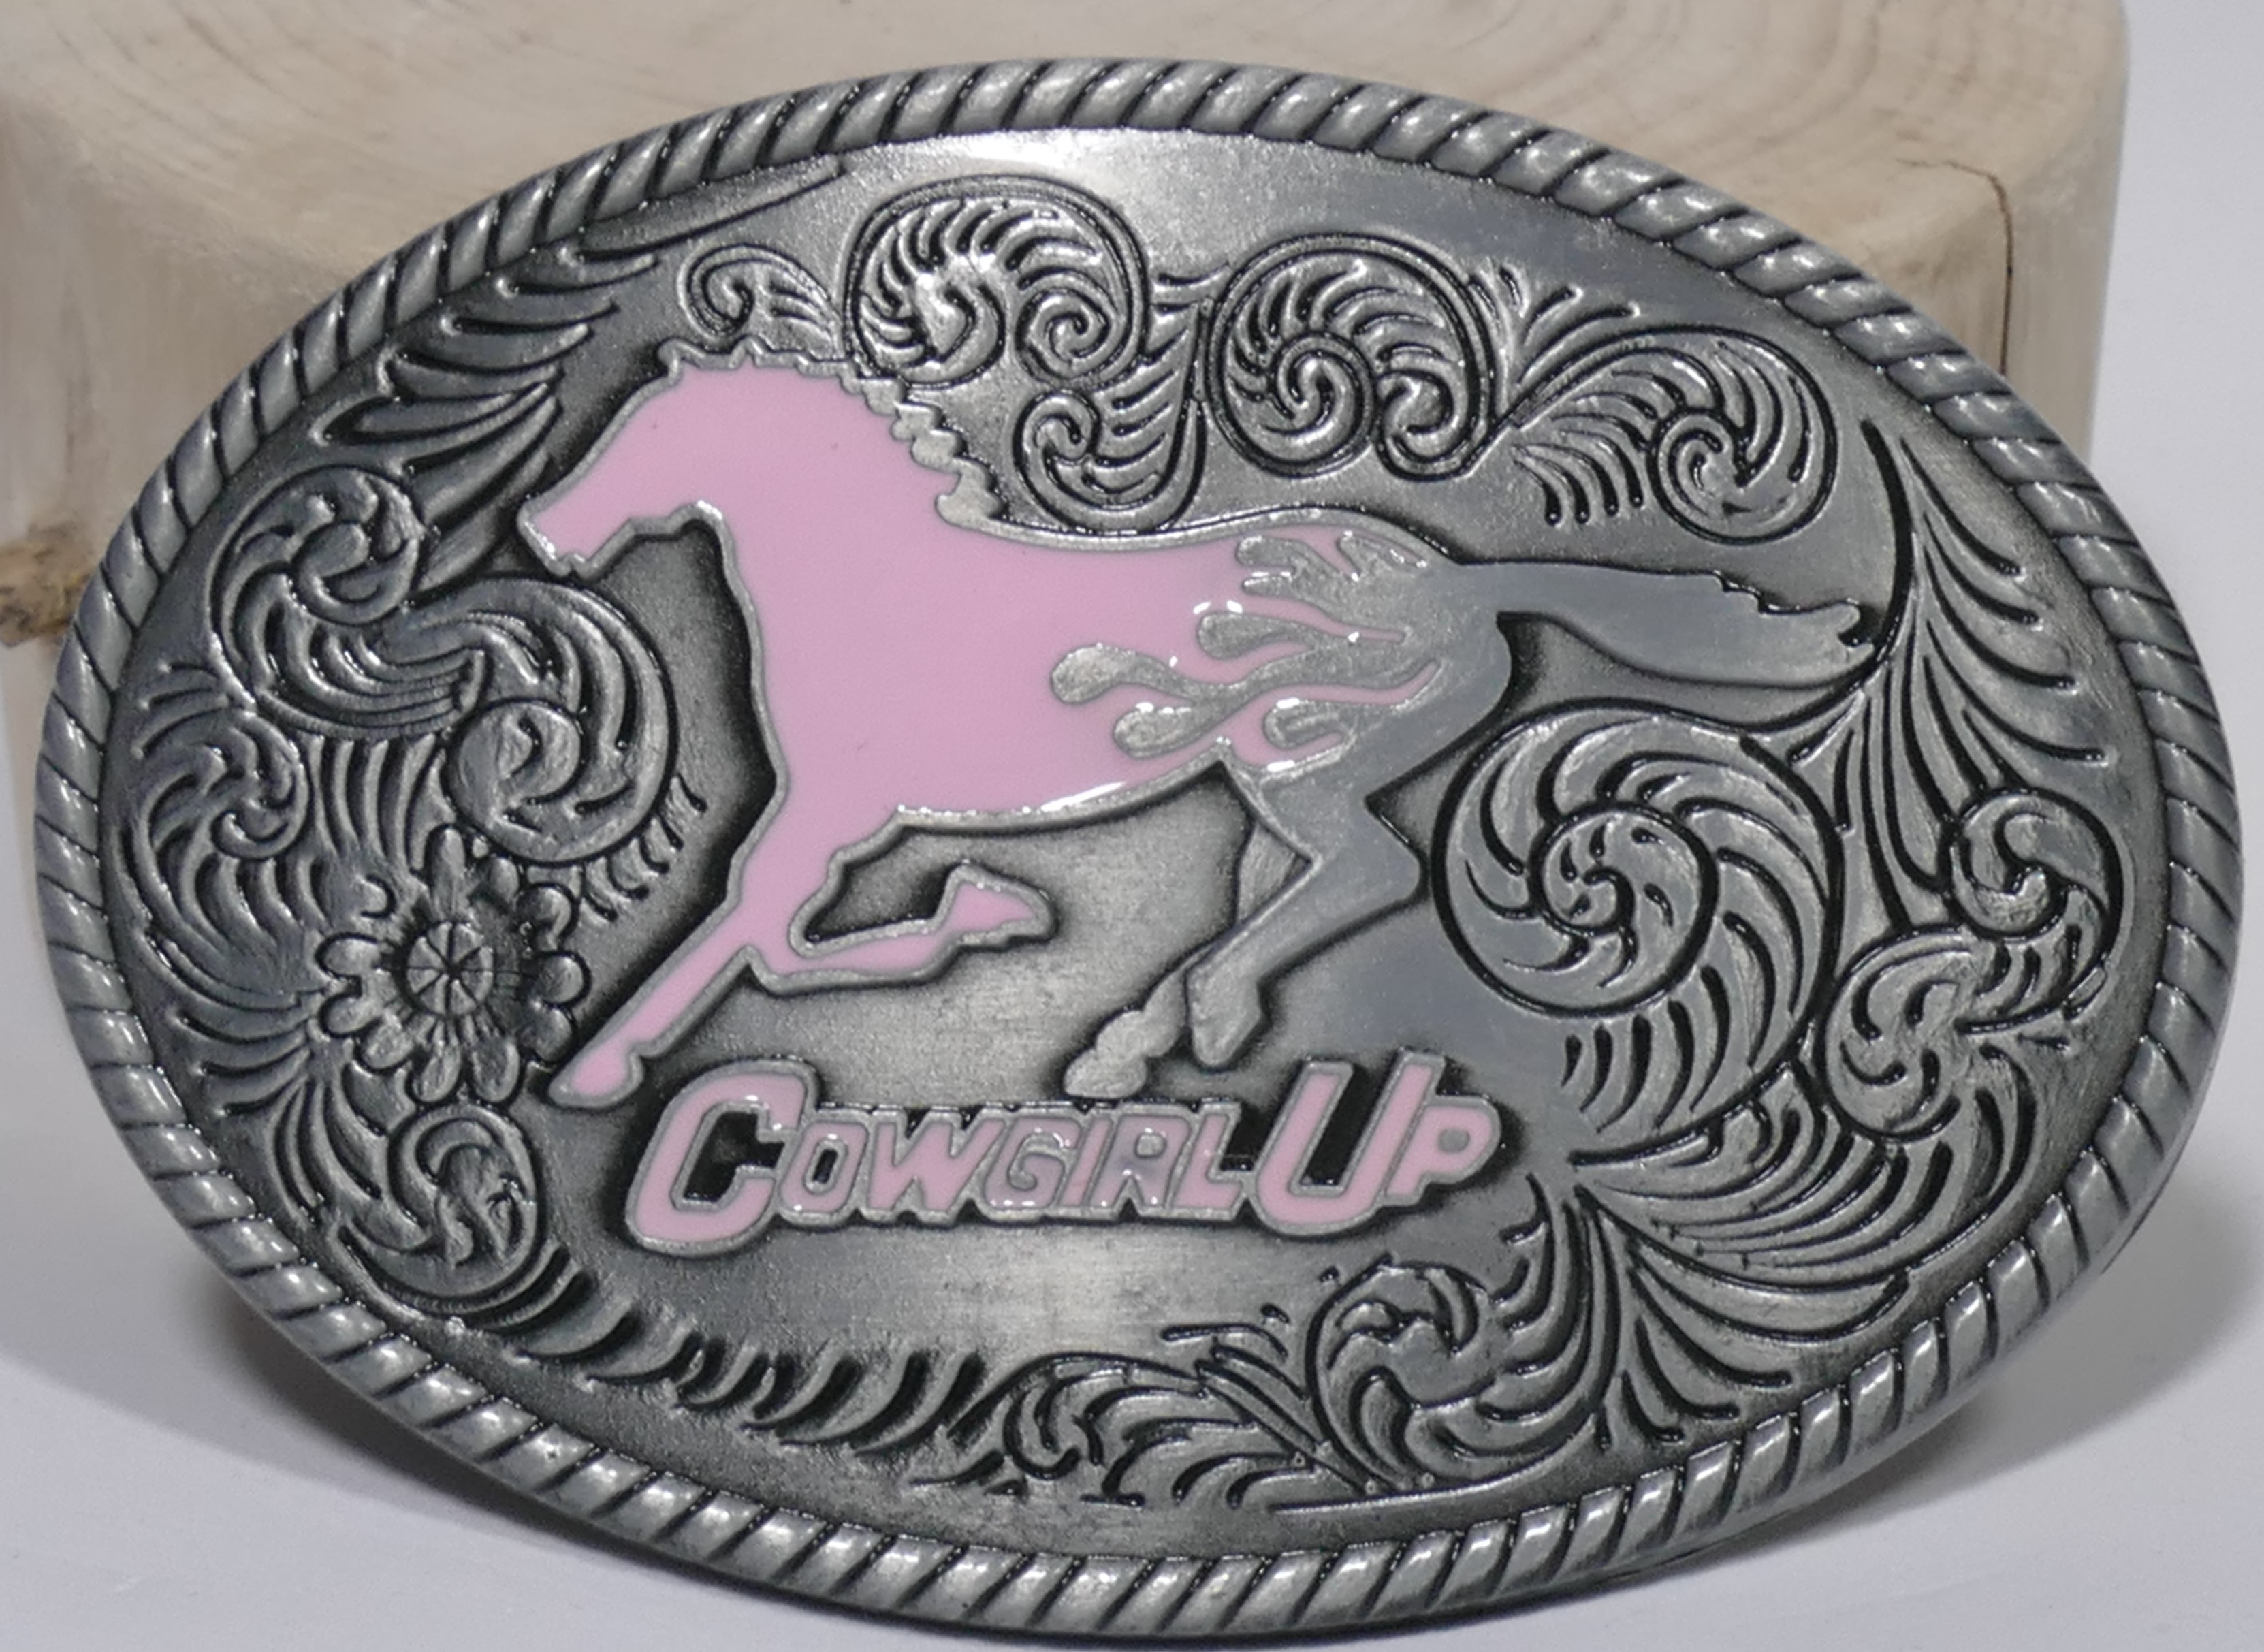 Buckle Cowgirl Up galoppierendes Pferd pink eckig , Western Gürtelschnalle